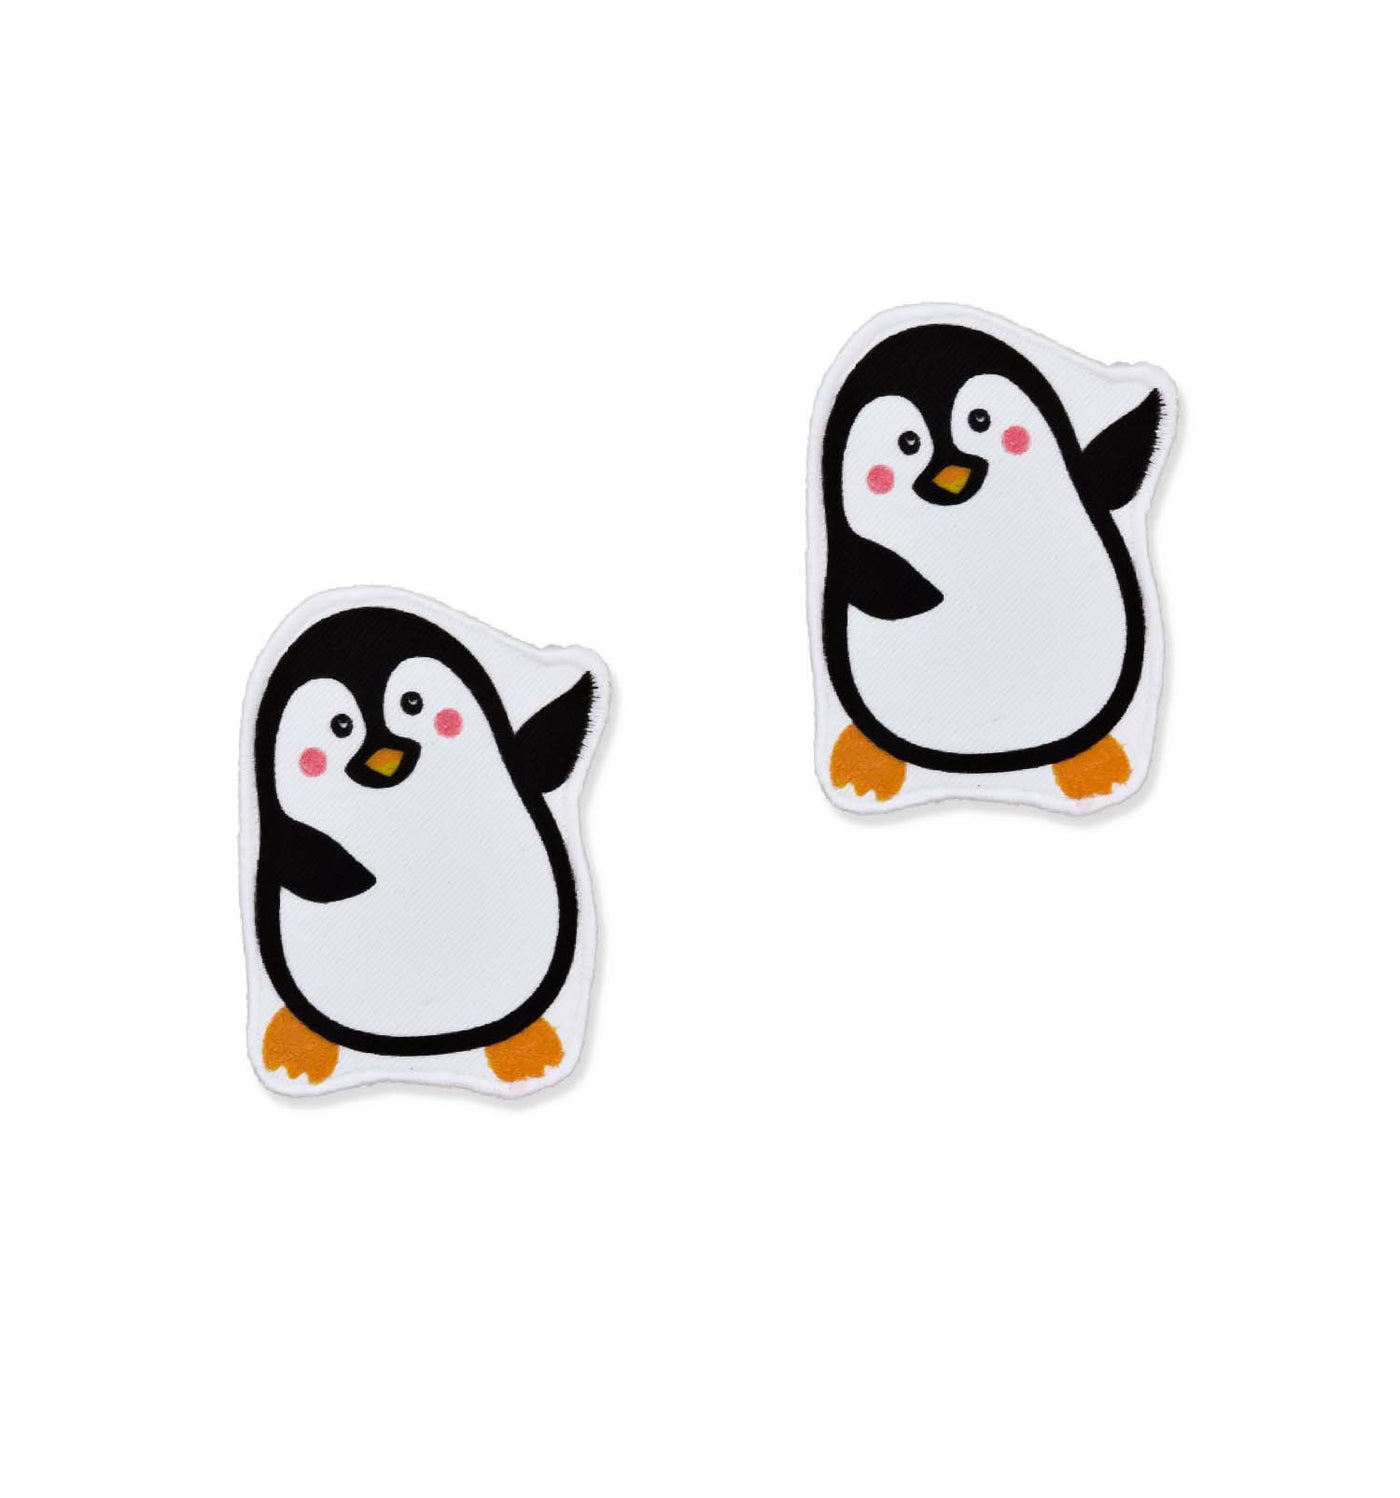 Austauschbare Knieschoner Pinguine | sticklett Online Store.